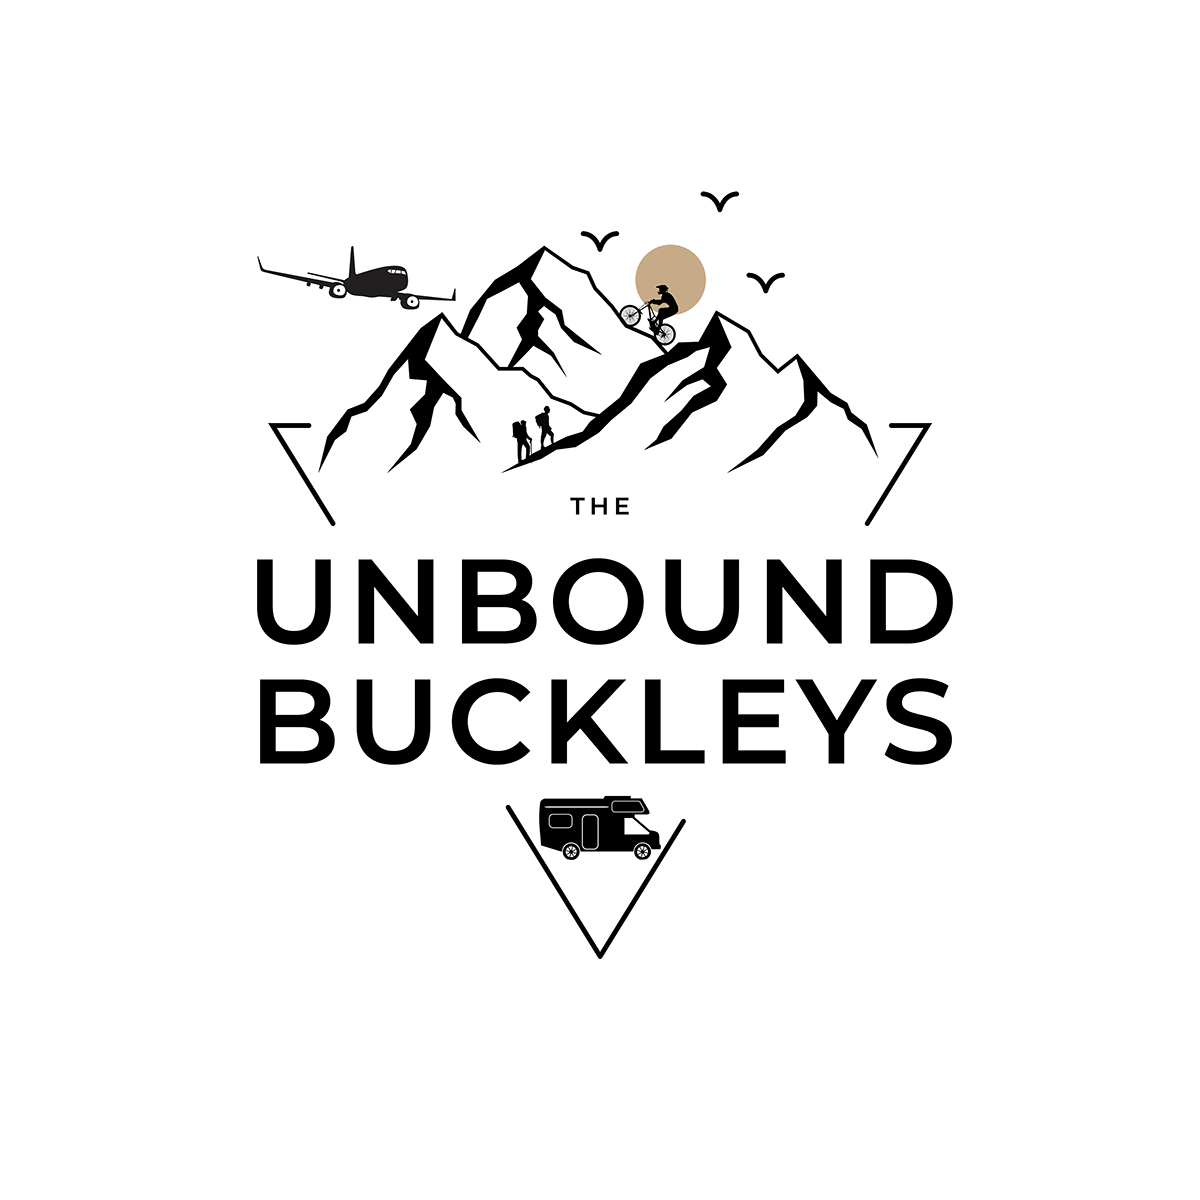 The Unbound Buckleys